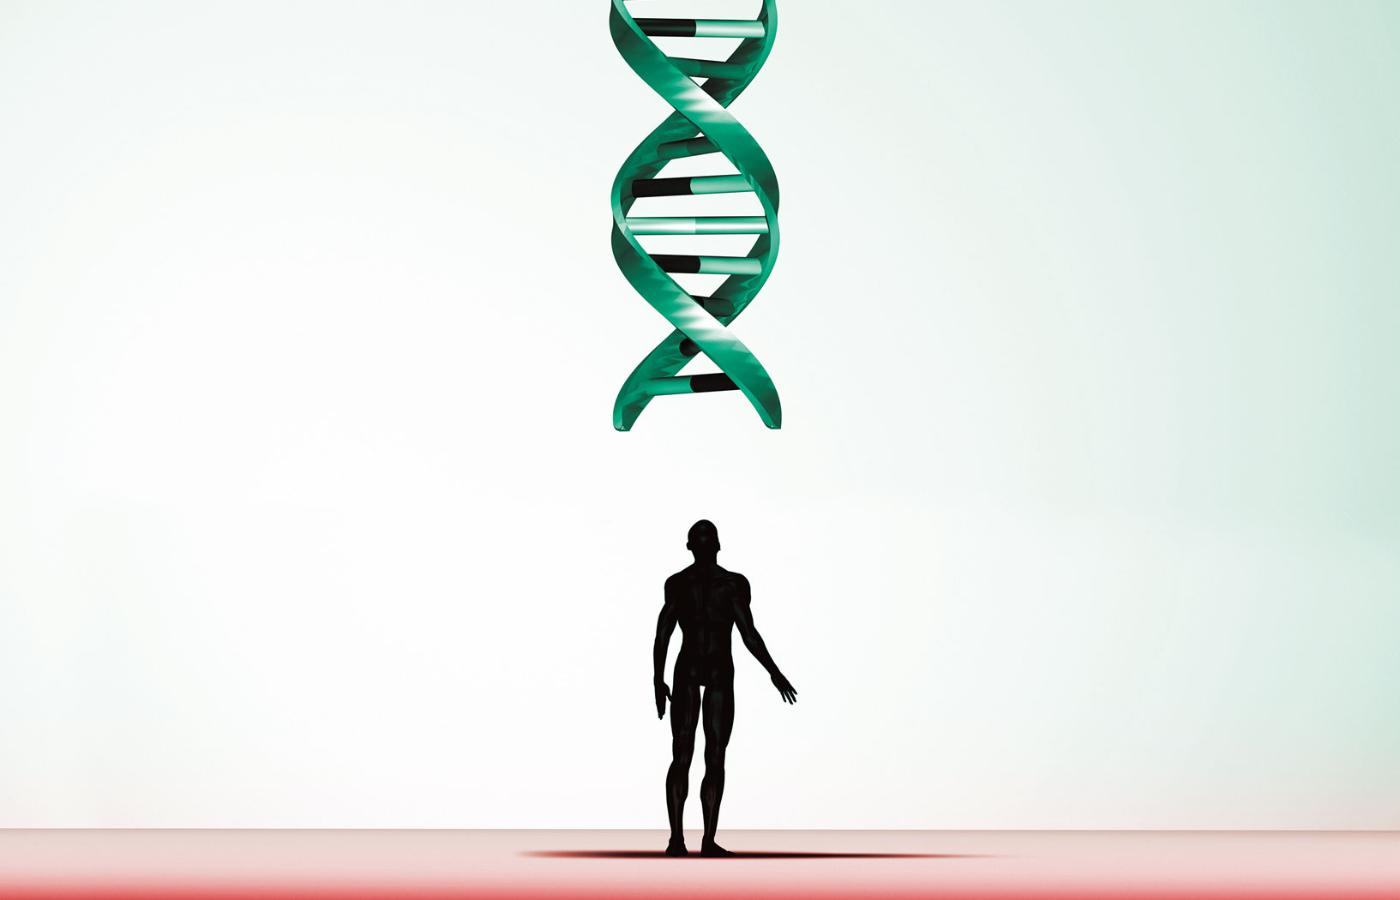 Wpływ genów na człowieka splata się z wpływem środowiska, dietą i stylem życia w wielu chorobach, które z pozoru wydają się nieodwołalnym wyrokiem losu.